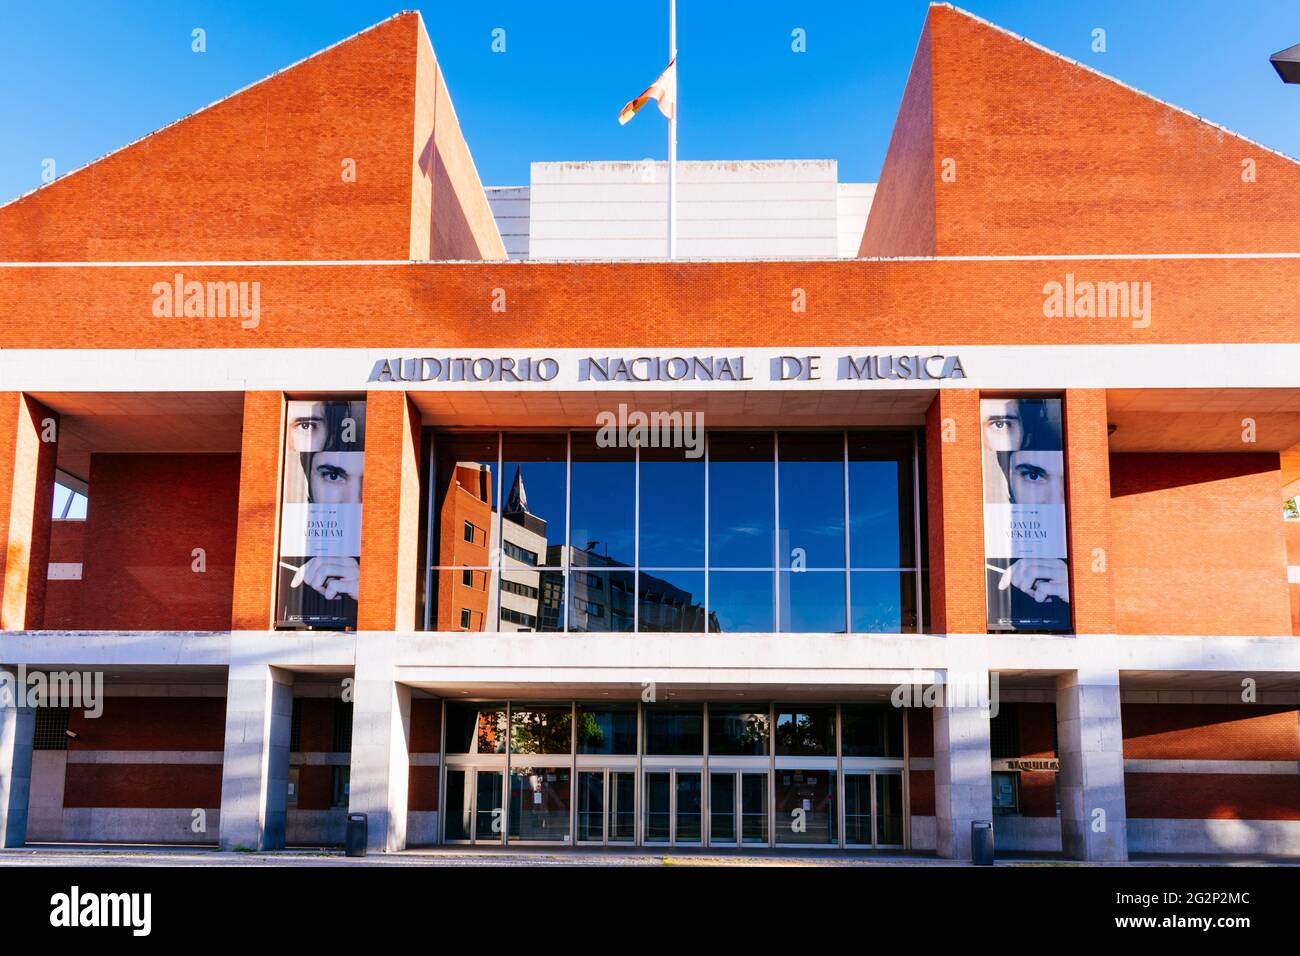 L'Auditorio Nacional de Música, Auditorium nazionale della musica, è un complesso di sedi di concerti situato a Madrid, in Spagna, e la principale sala concerti in t Foto Stock